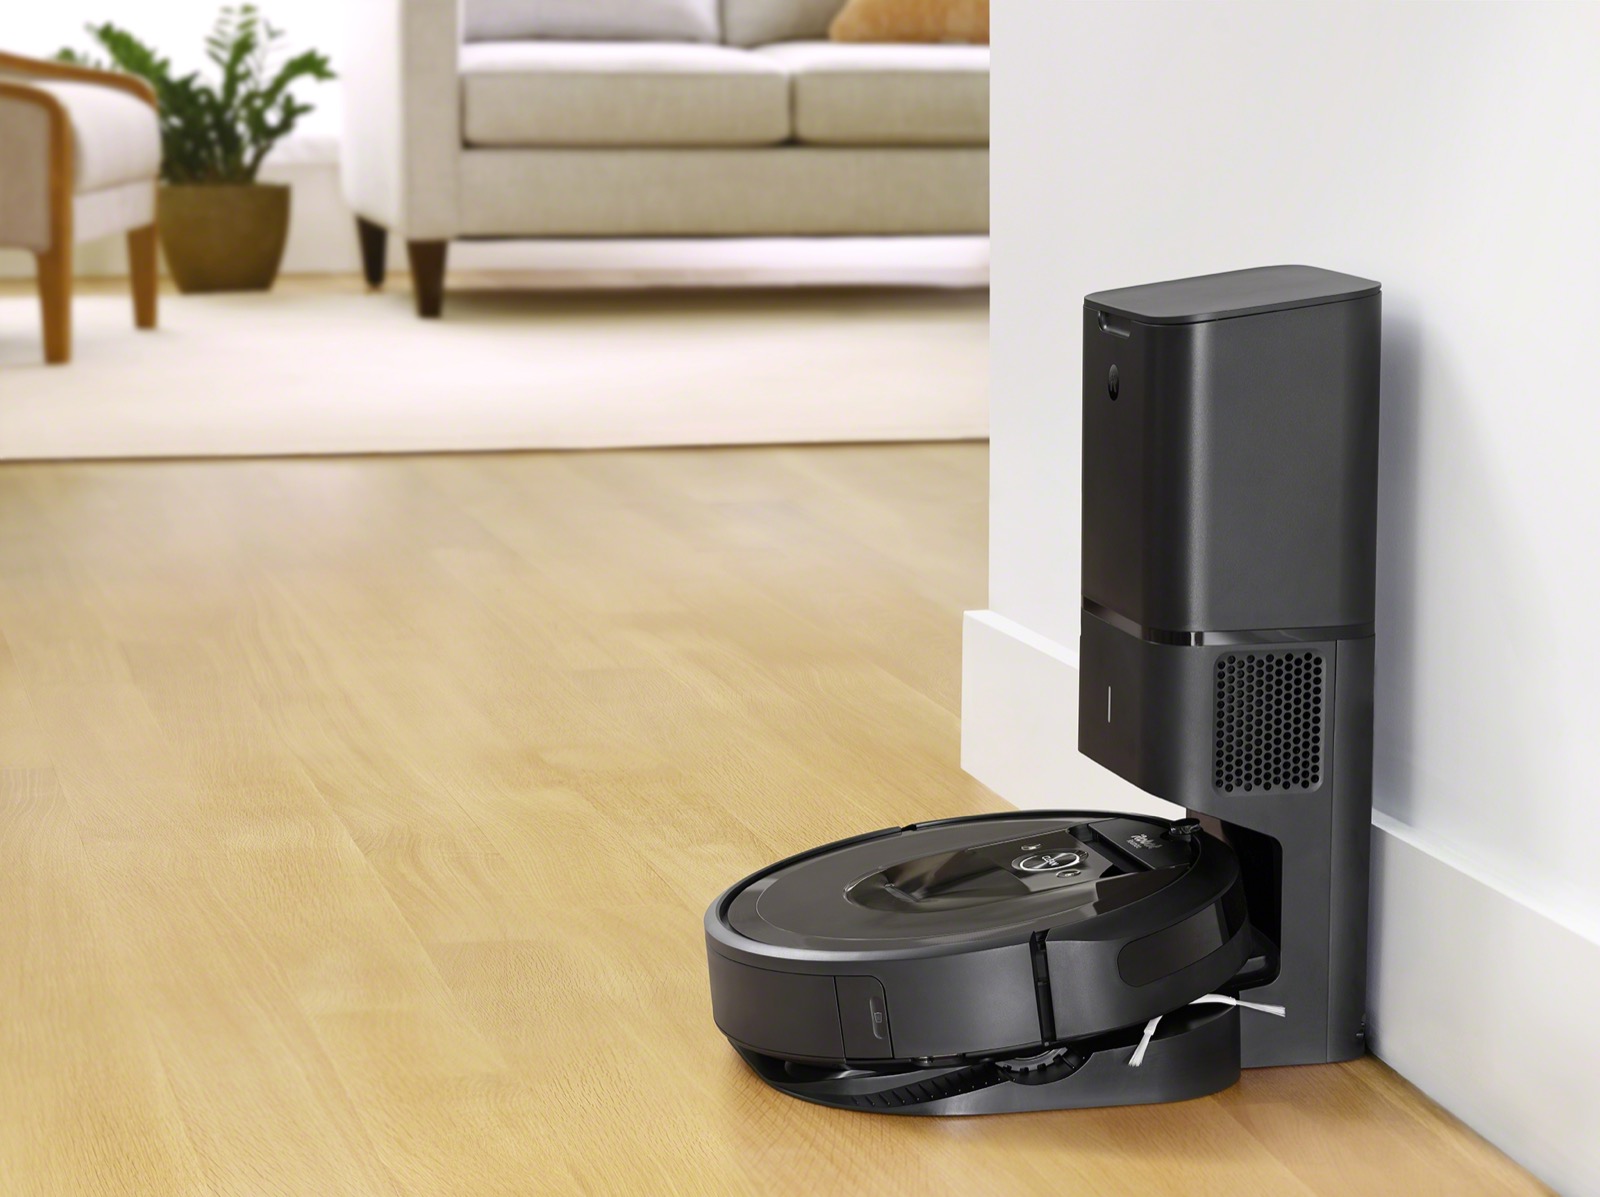 Recensione iRobot Roomba i7+, l’aspirapolvere 3.0 in casa